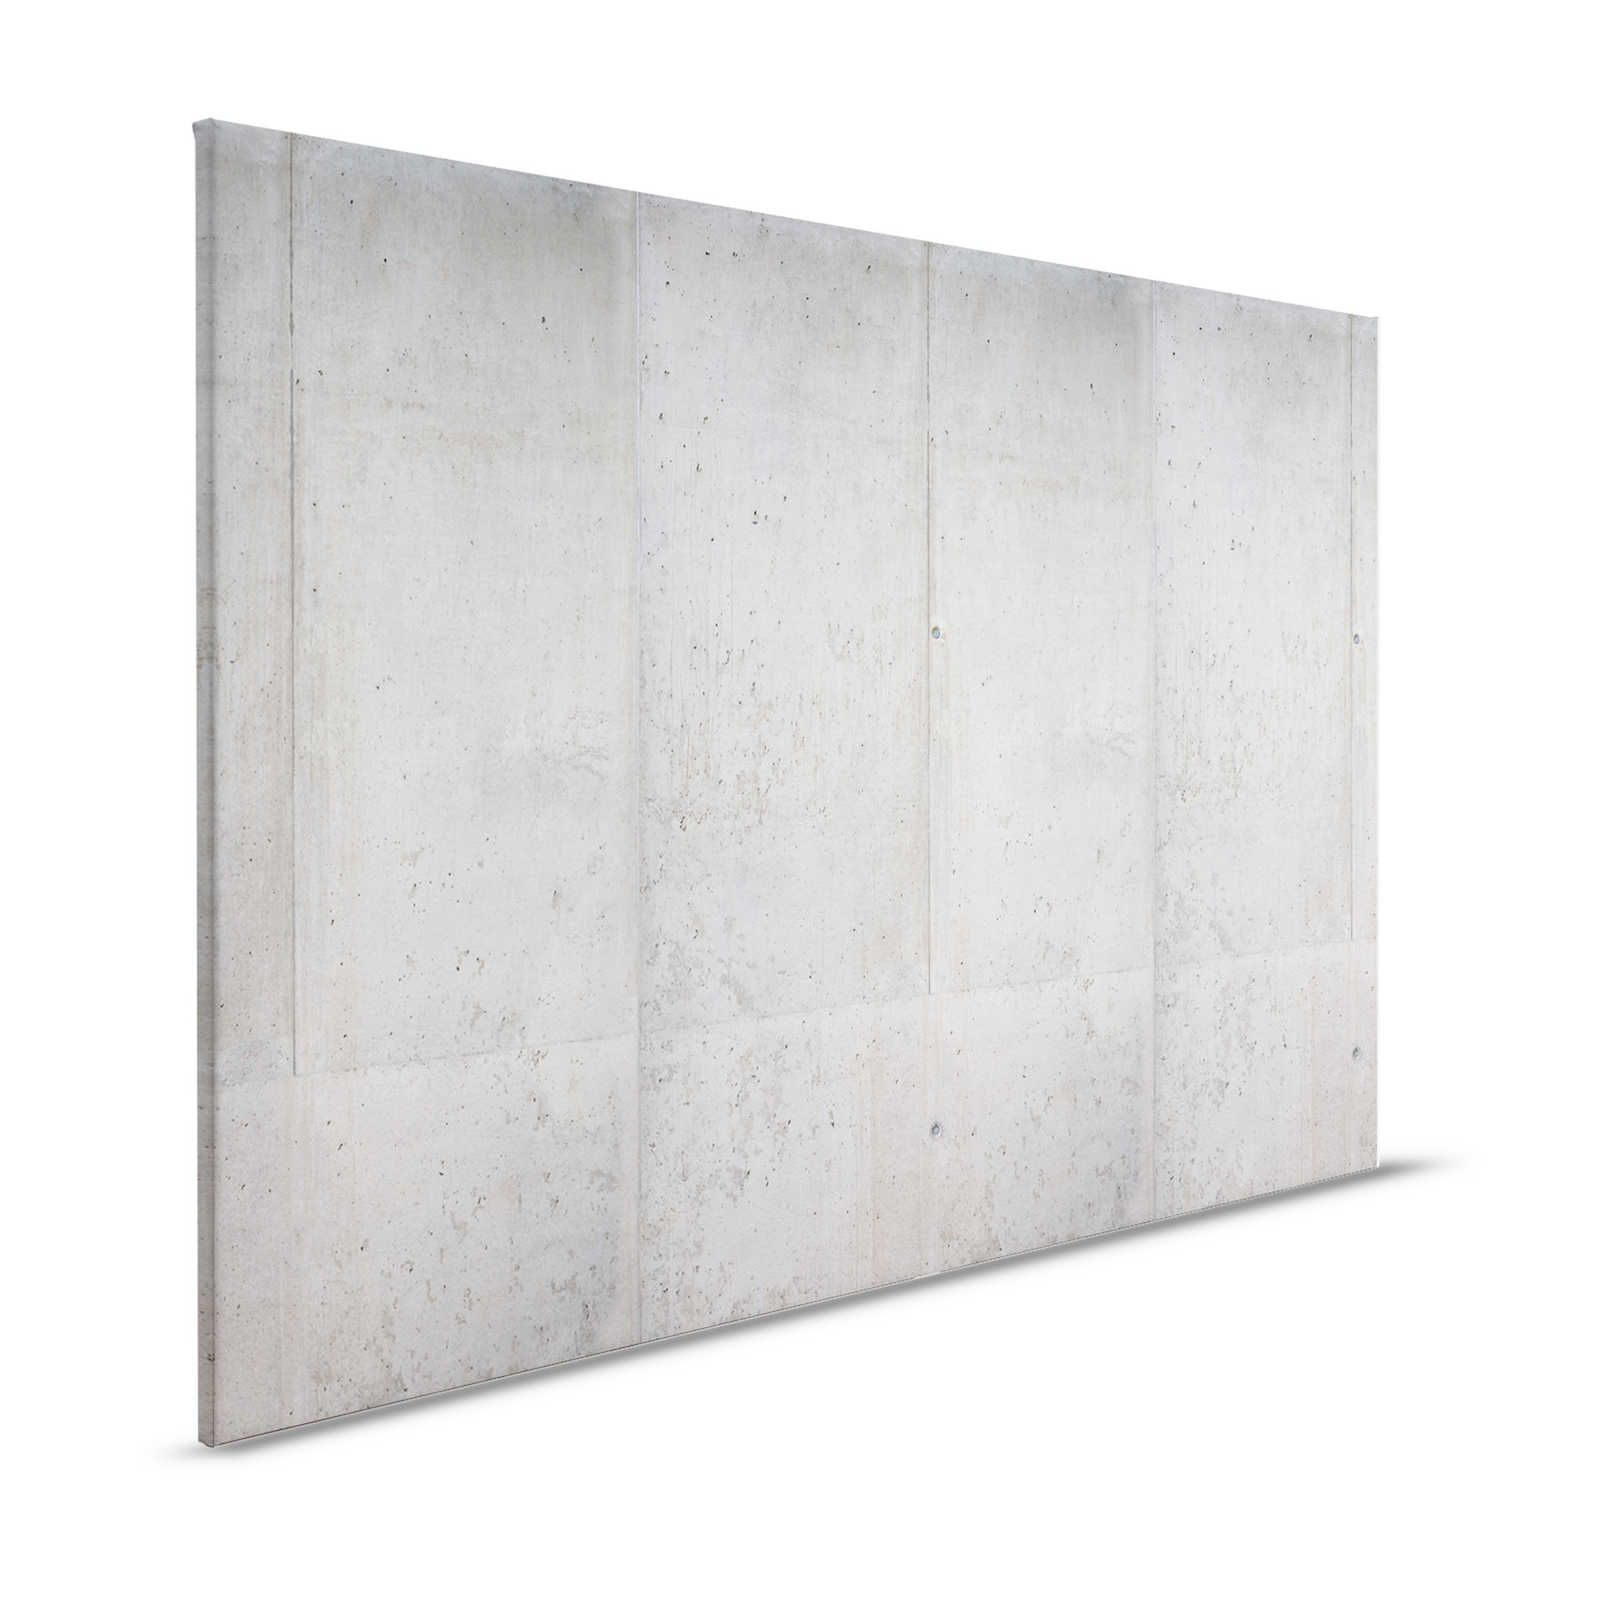 Pittura su tela di cemento Stile industriale Parete di cemento a vista - 1,20 m x 0,80 m
